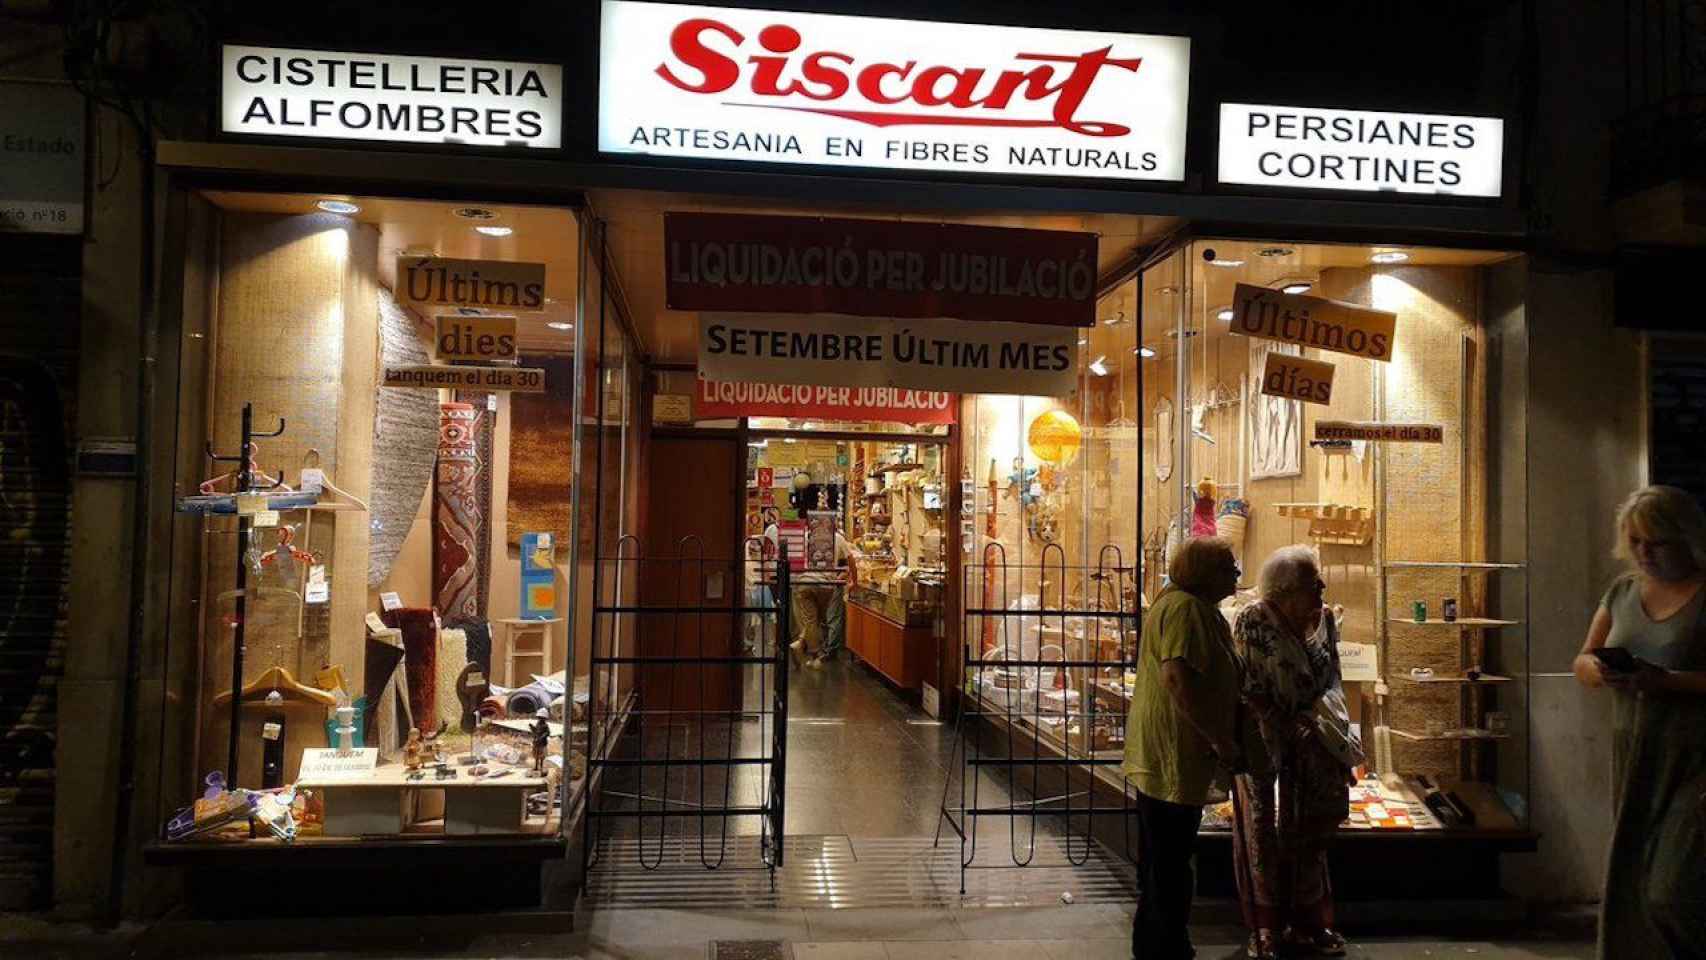 La cestería Siscart, en Hostafrancs / TWITTER @SERGISARRI